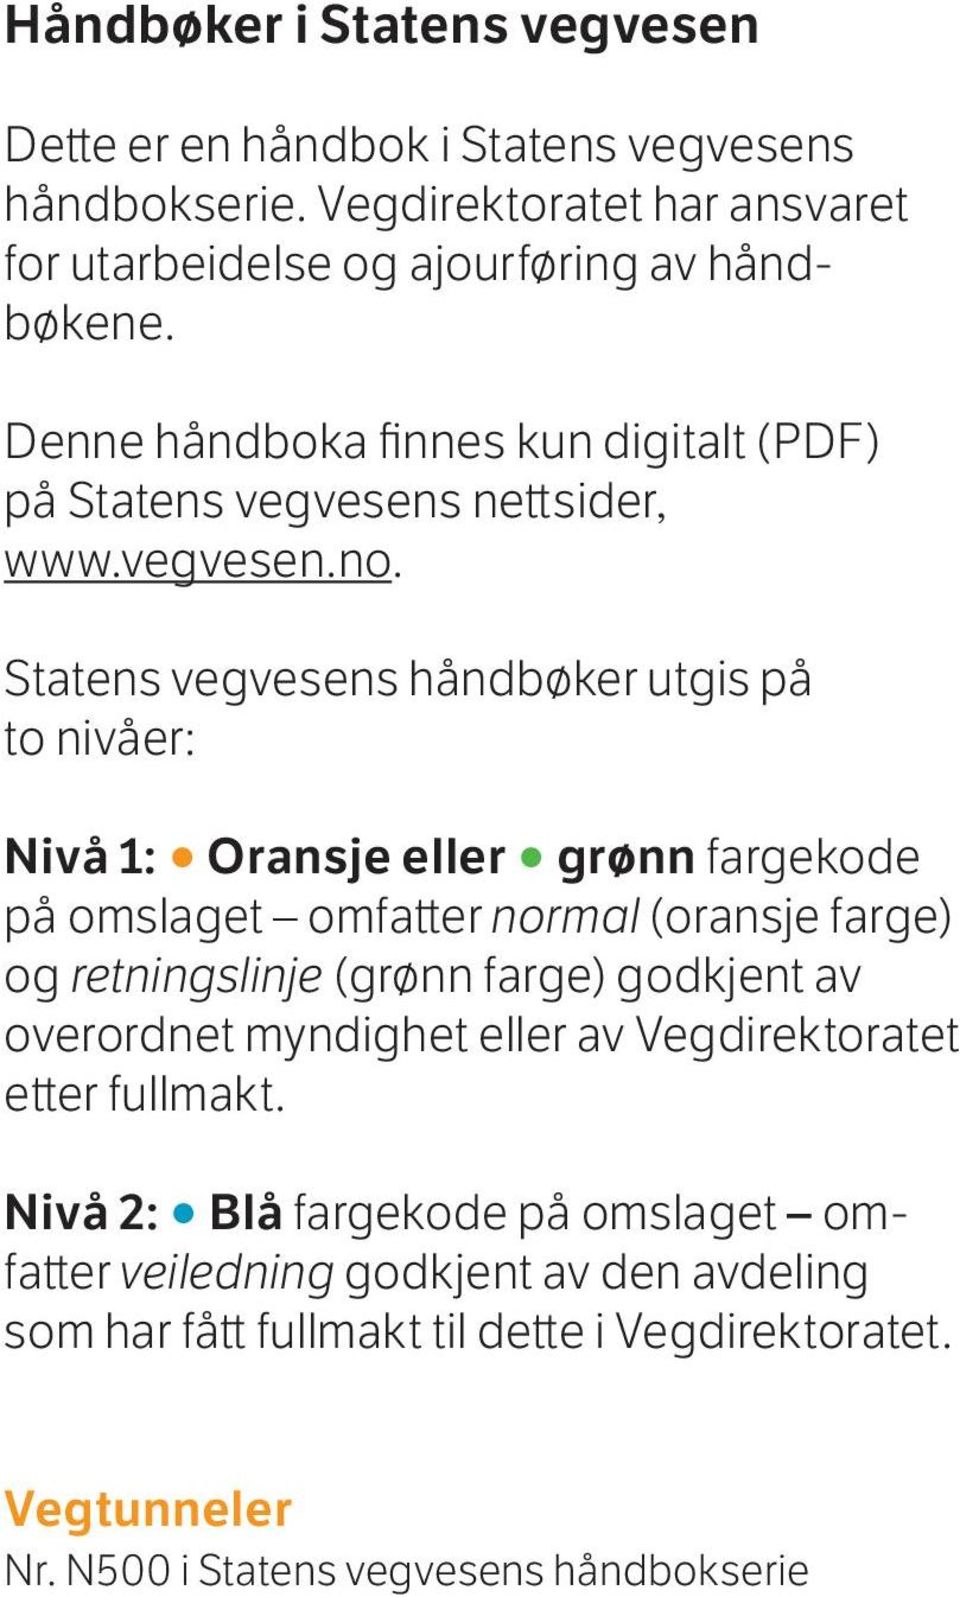 Statens vegvesens håndbøker utgis på to nivåer: Nivå 1: Oransje eller grønn fargekode på omslaget omfatter normal (oransje farge) og retningslinje (grønn farge) godkjent